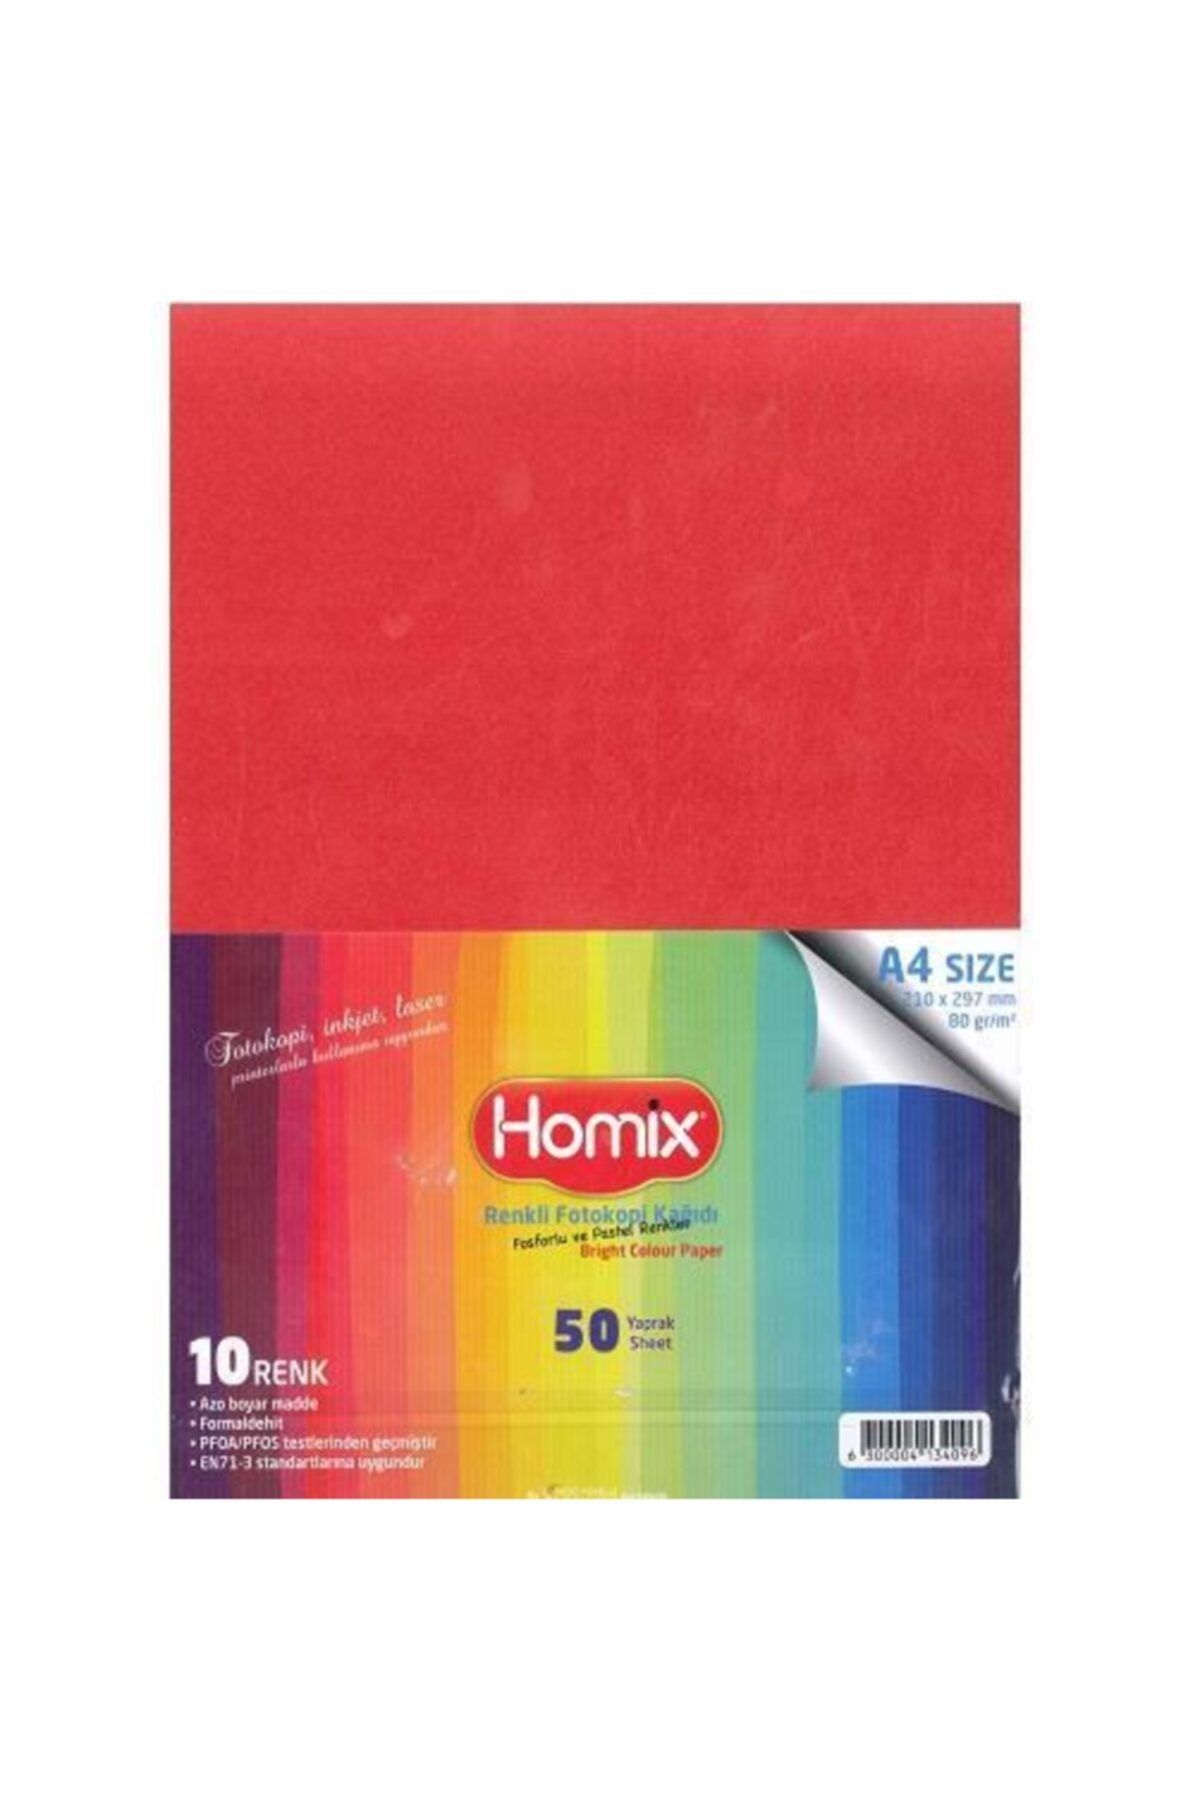 ADA Homix A4 50’li 10 Renkli Fosforlu Ve Pastel Renkli Fotokopi Kağıdı